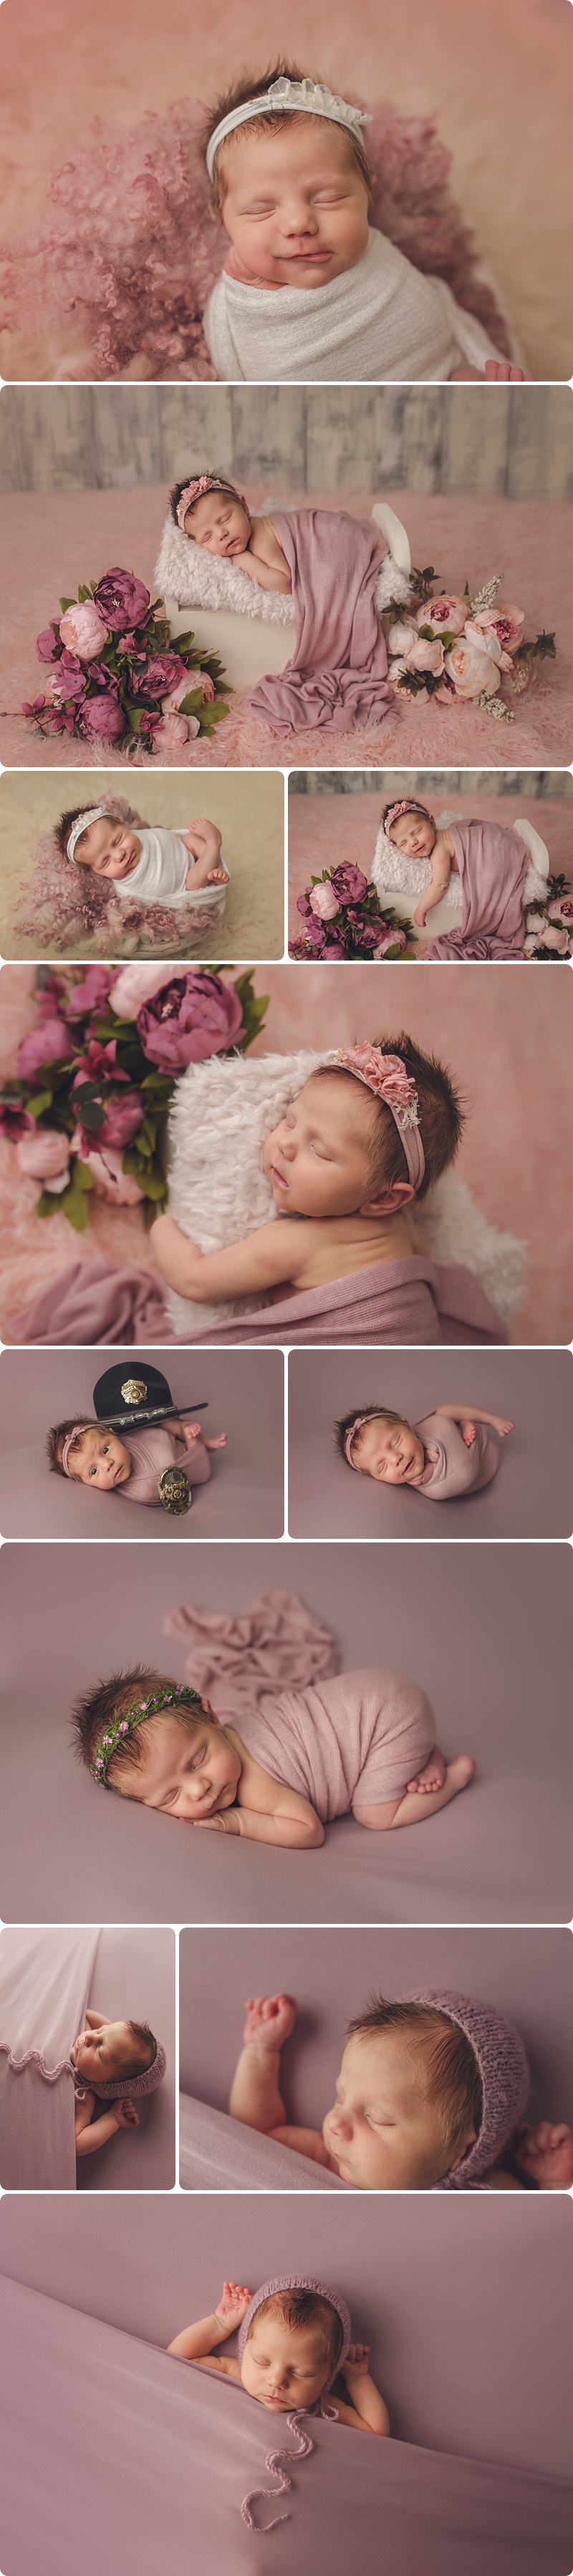 Beka Price Photography,baby girl,bppbabies,newborn,newborn baby,newborn girl,